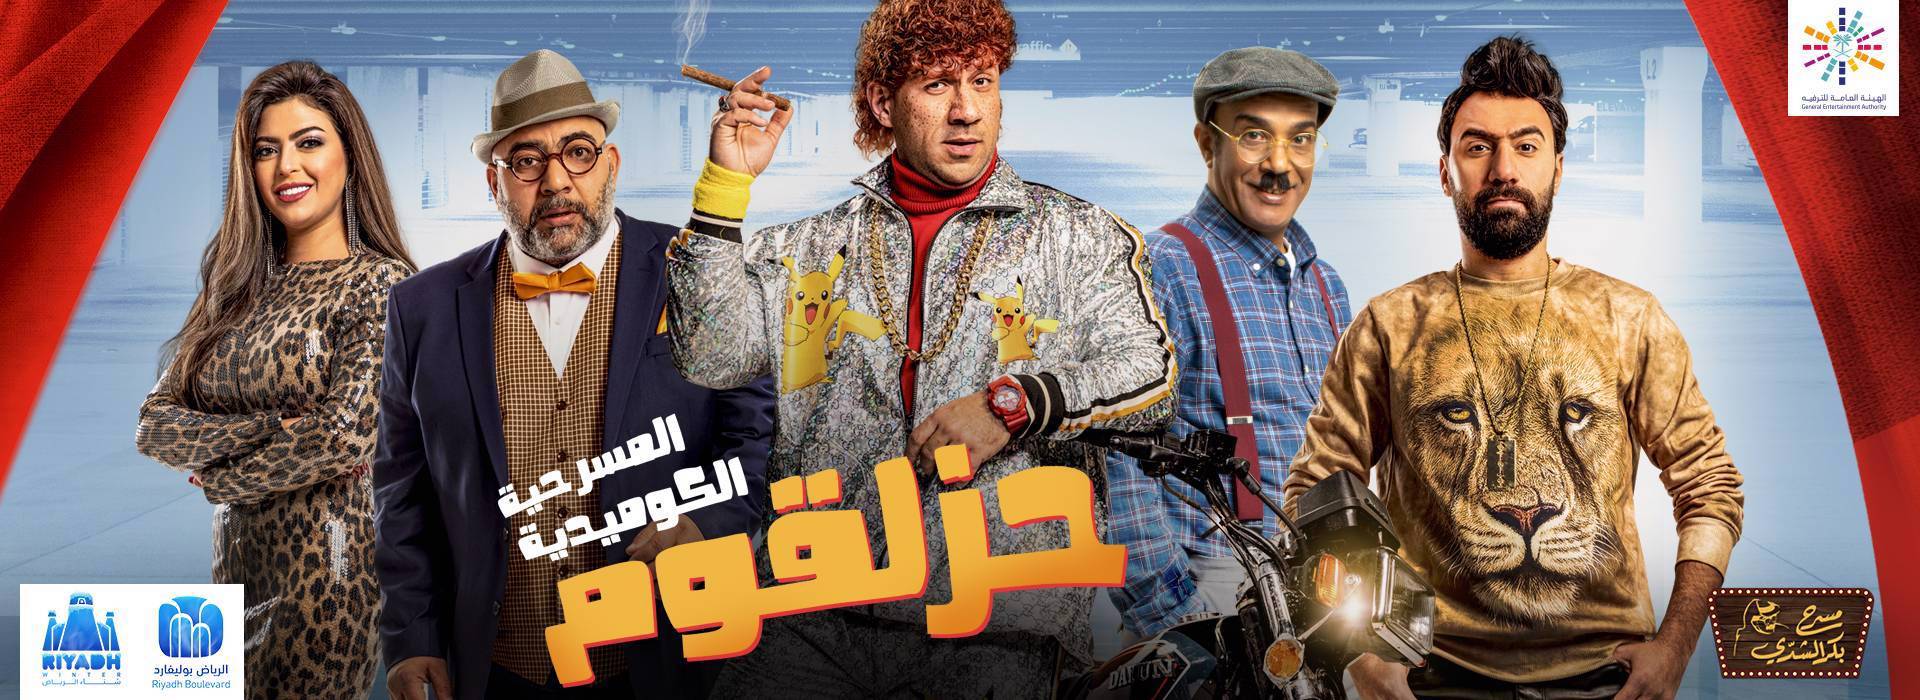 حجز مسرحية حزلقوم حصريًا في الرياض بوليفارد من 5-8 فبراير